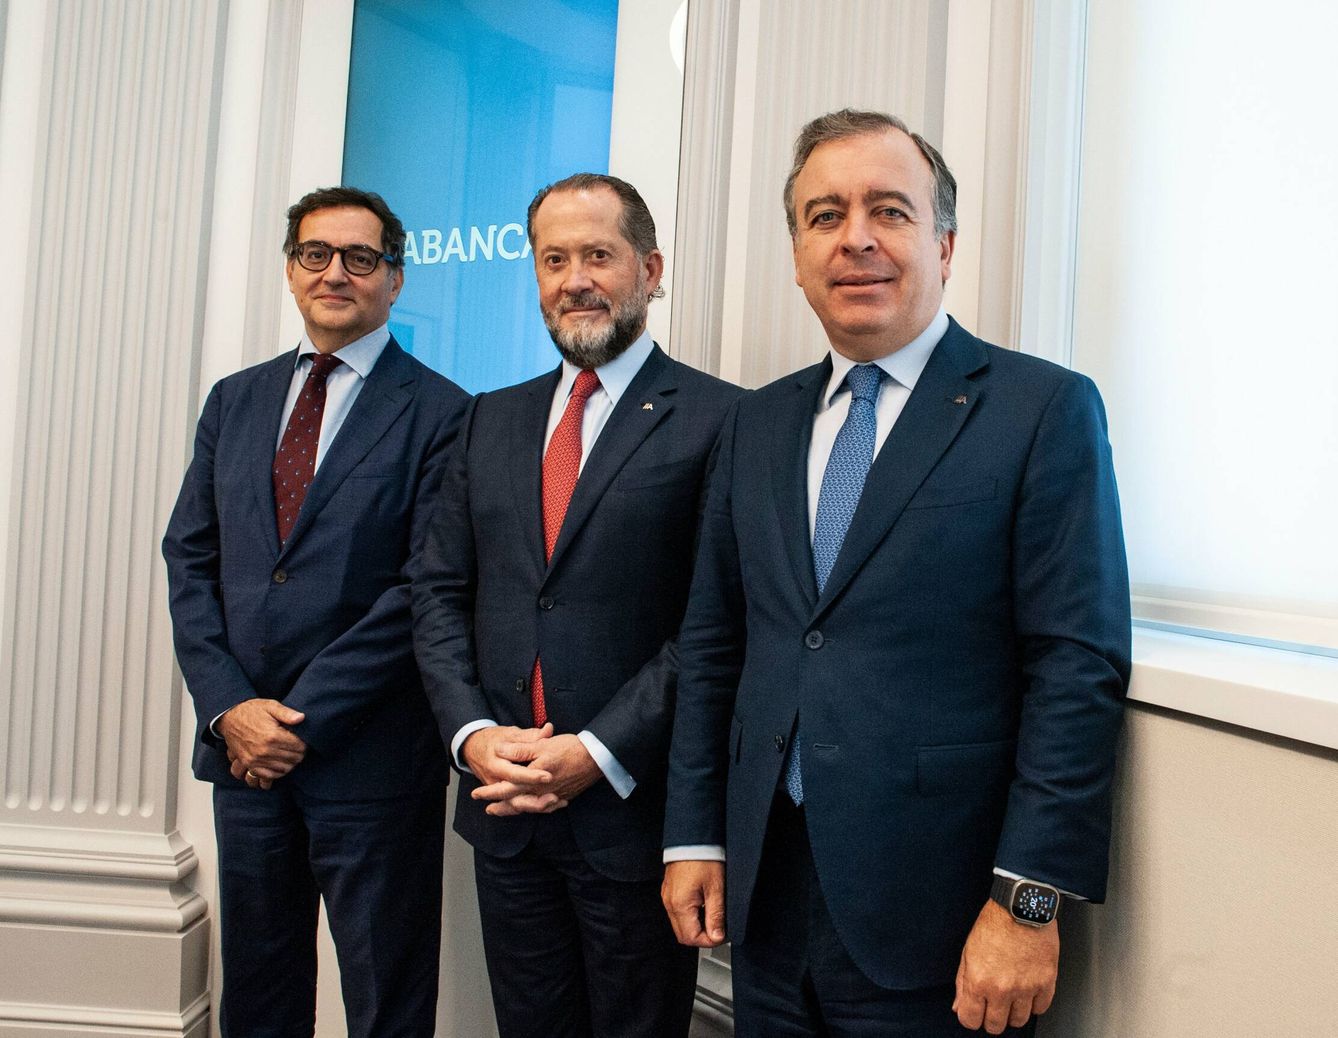 El representante de Crédit Mutuel, Alexandre Saada (i), el presidente de Abanca, Juan Carlos Escotet (c), y el CEO de Abanca, Francisco Botas (d), en la firma del acuerdo. (Abanca)